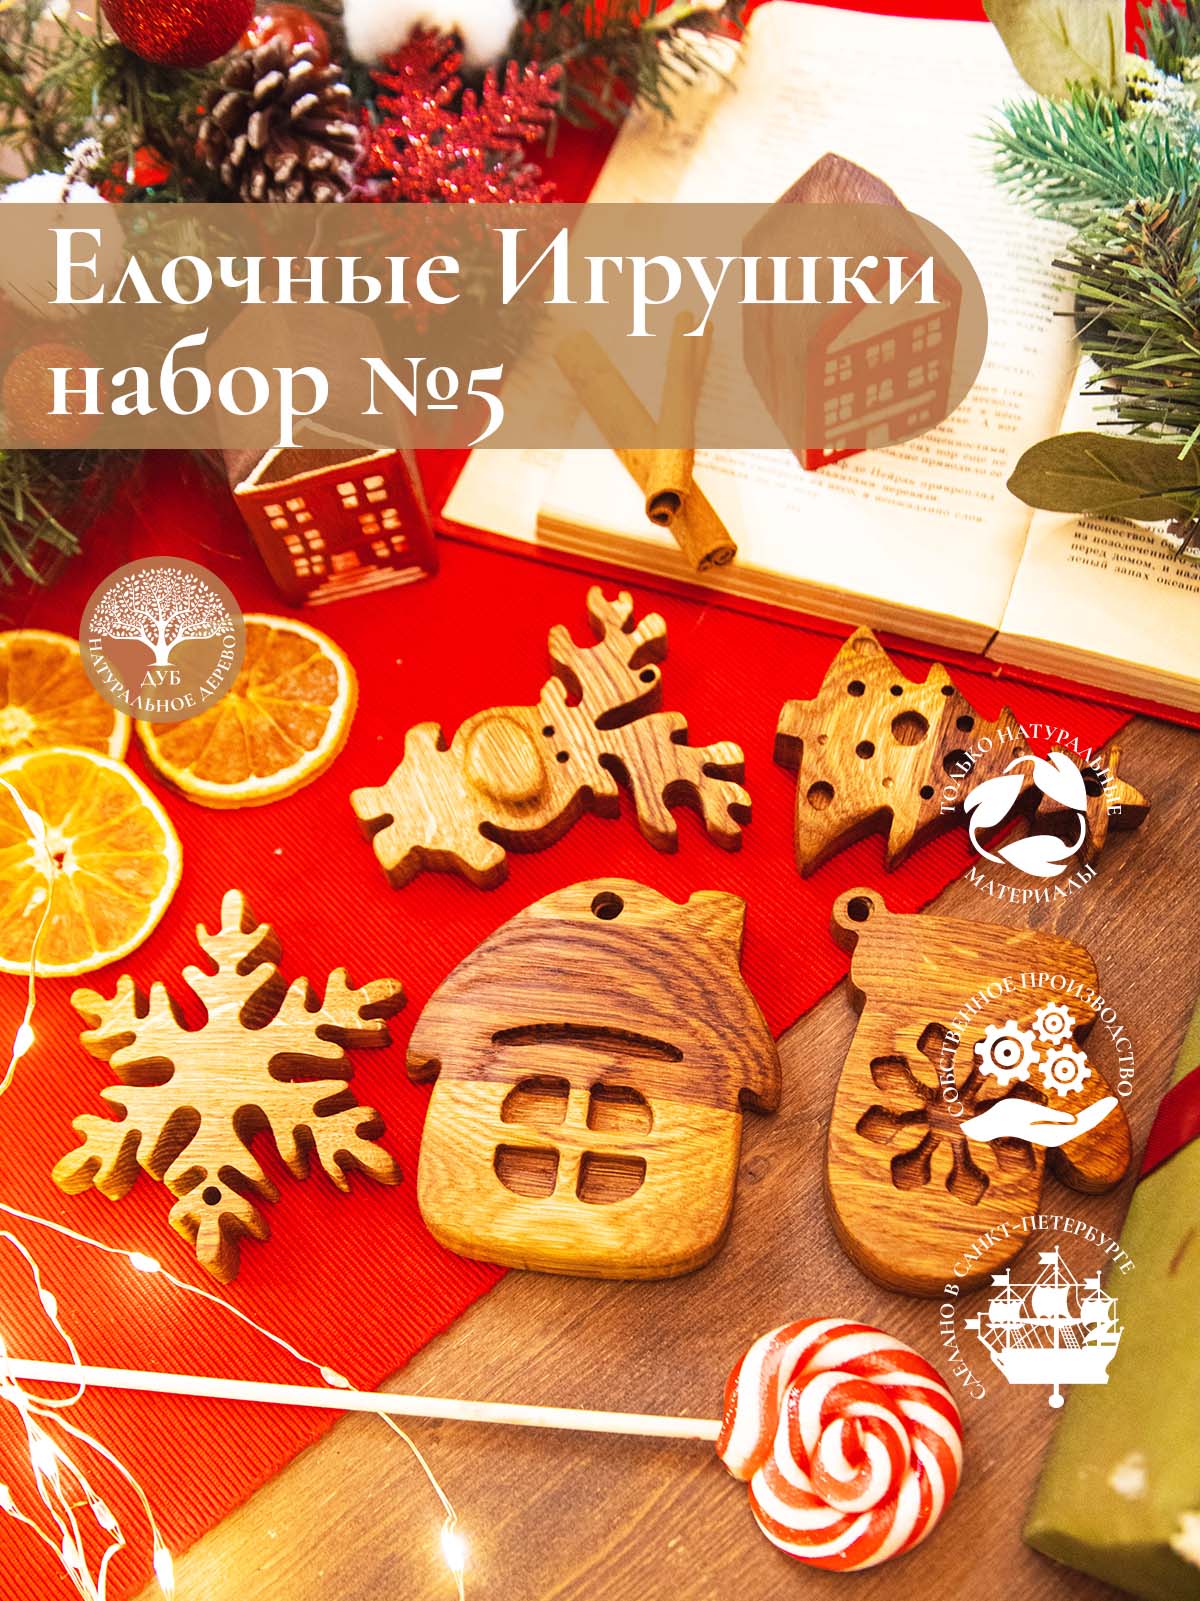 Новогодний набор из 5-ти деревянных ёлочных игрушек из дуба Ёлочка Оленёнок Варежка Домик Снежинка